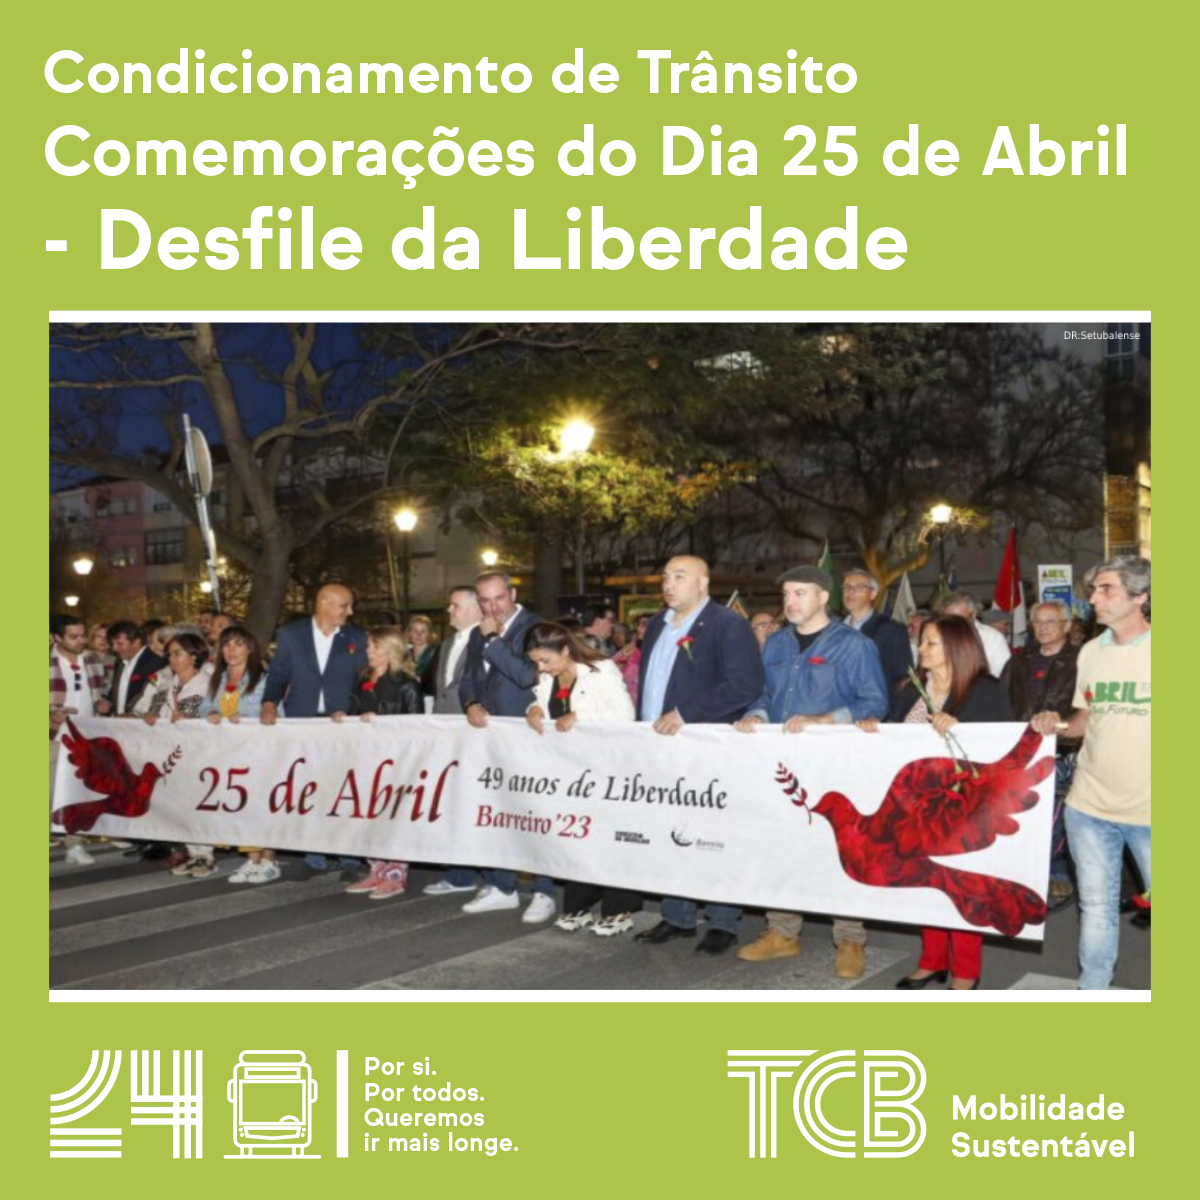 Comemorações dos 50 anos do 25 de Abril | Condicionamento de Trânsito – DESFILE DA LIBERDADE | Carreiras 1, 2, 4, 14 e 16